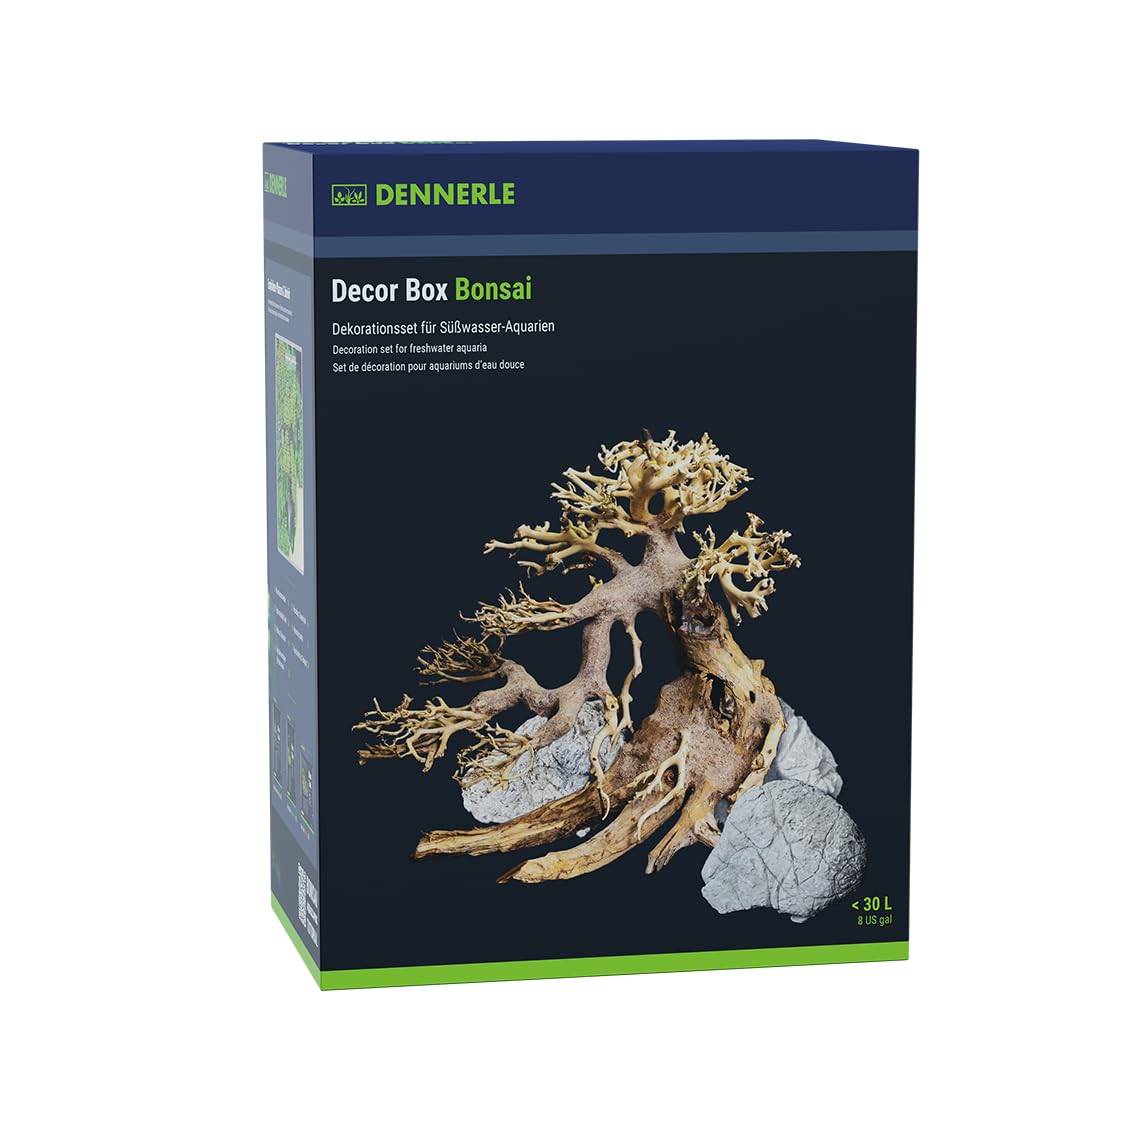 Dennerle Decor Box Bonsai - Dekorationsset für Süßwasser-Aquarien